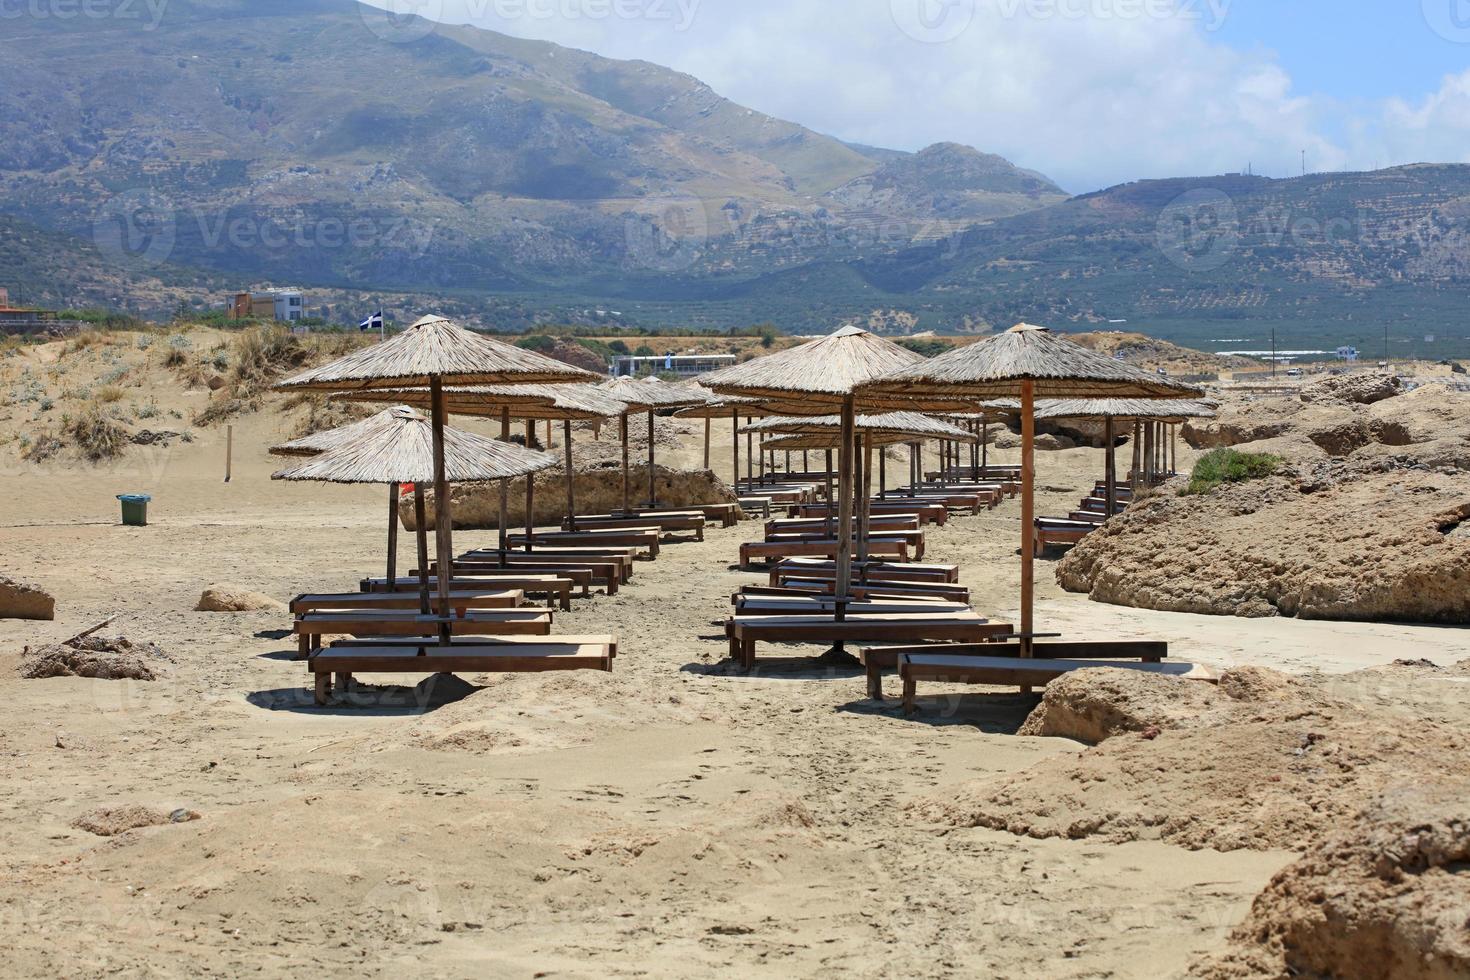 plage de falassarna lagon bleu île de crète été 2020 vacances covid19 photo